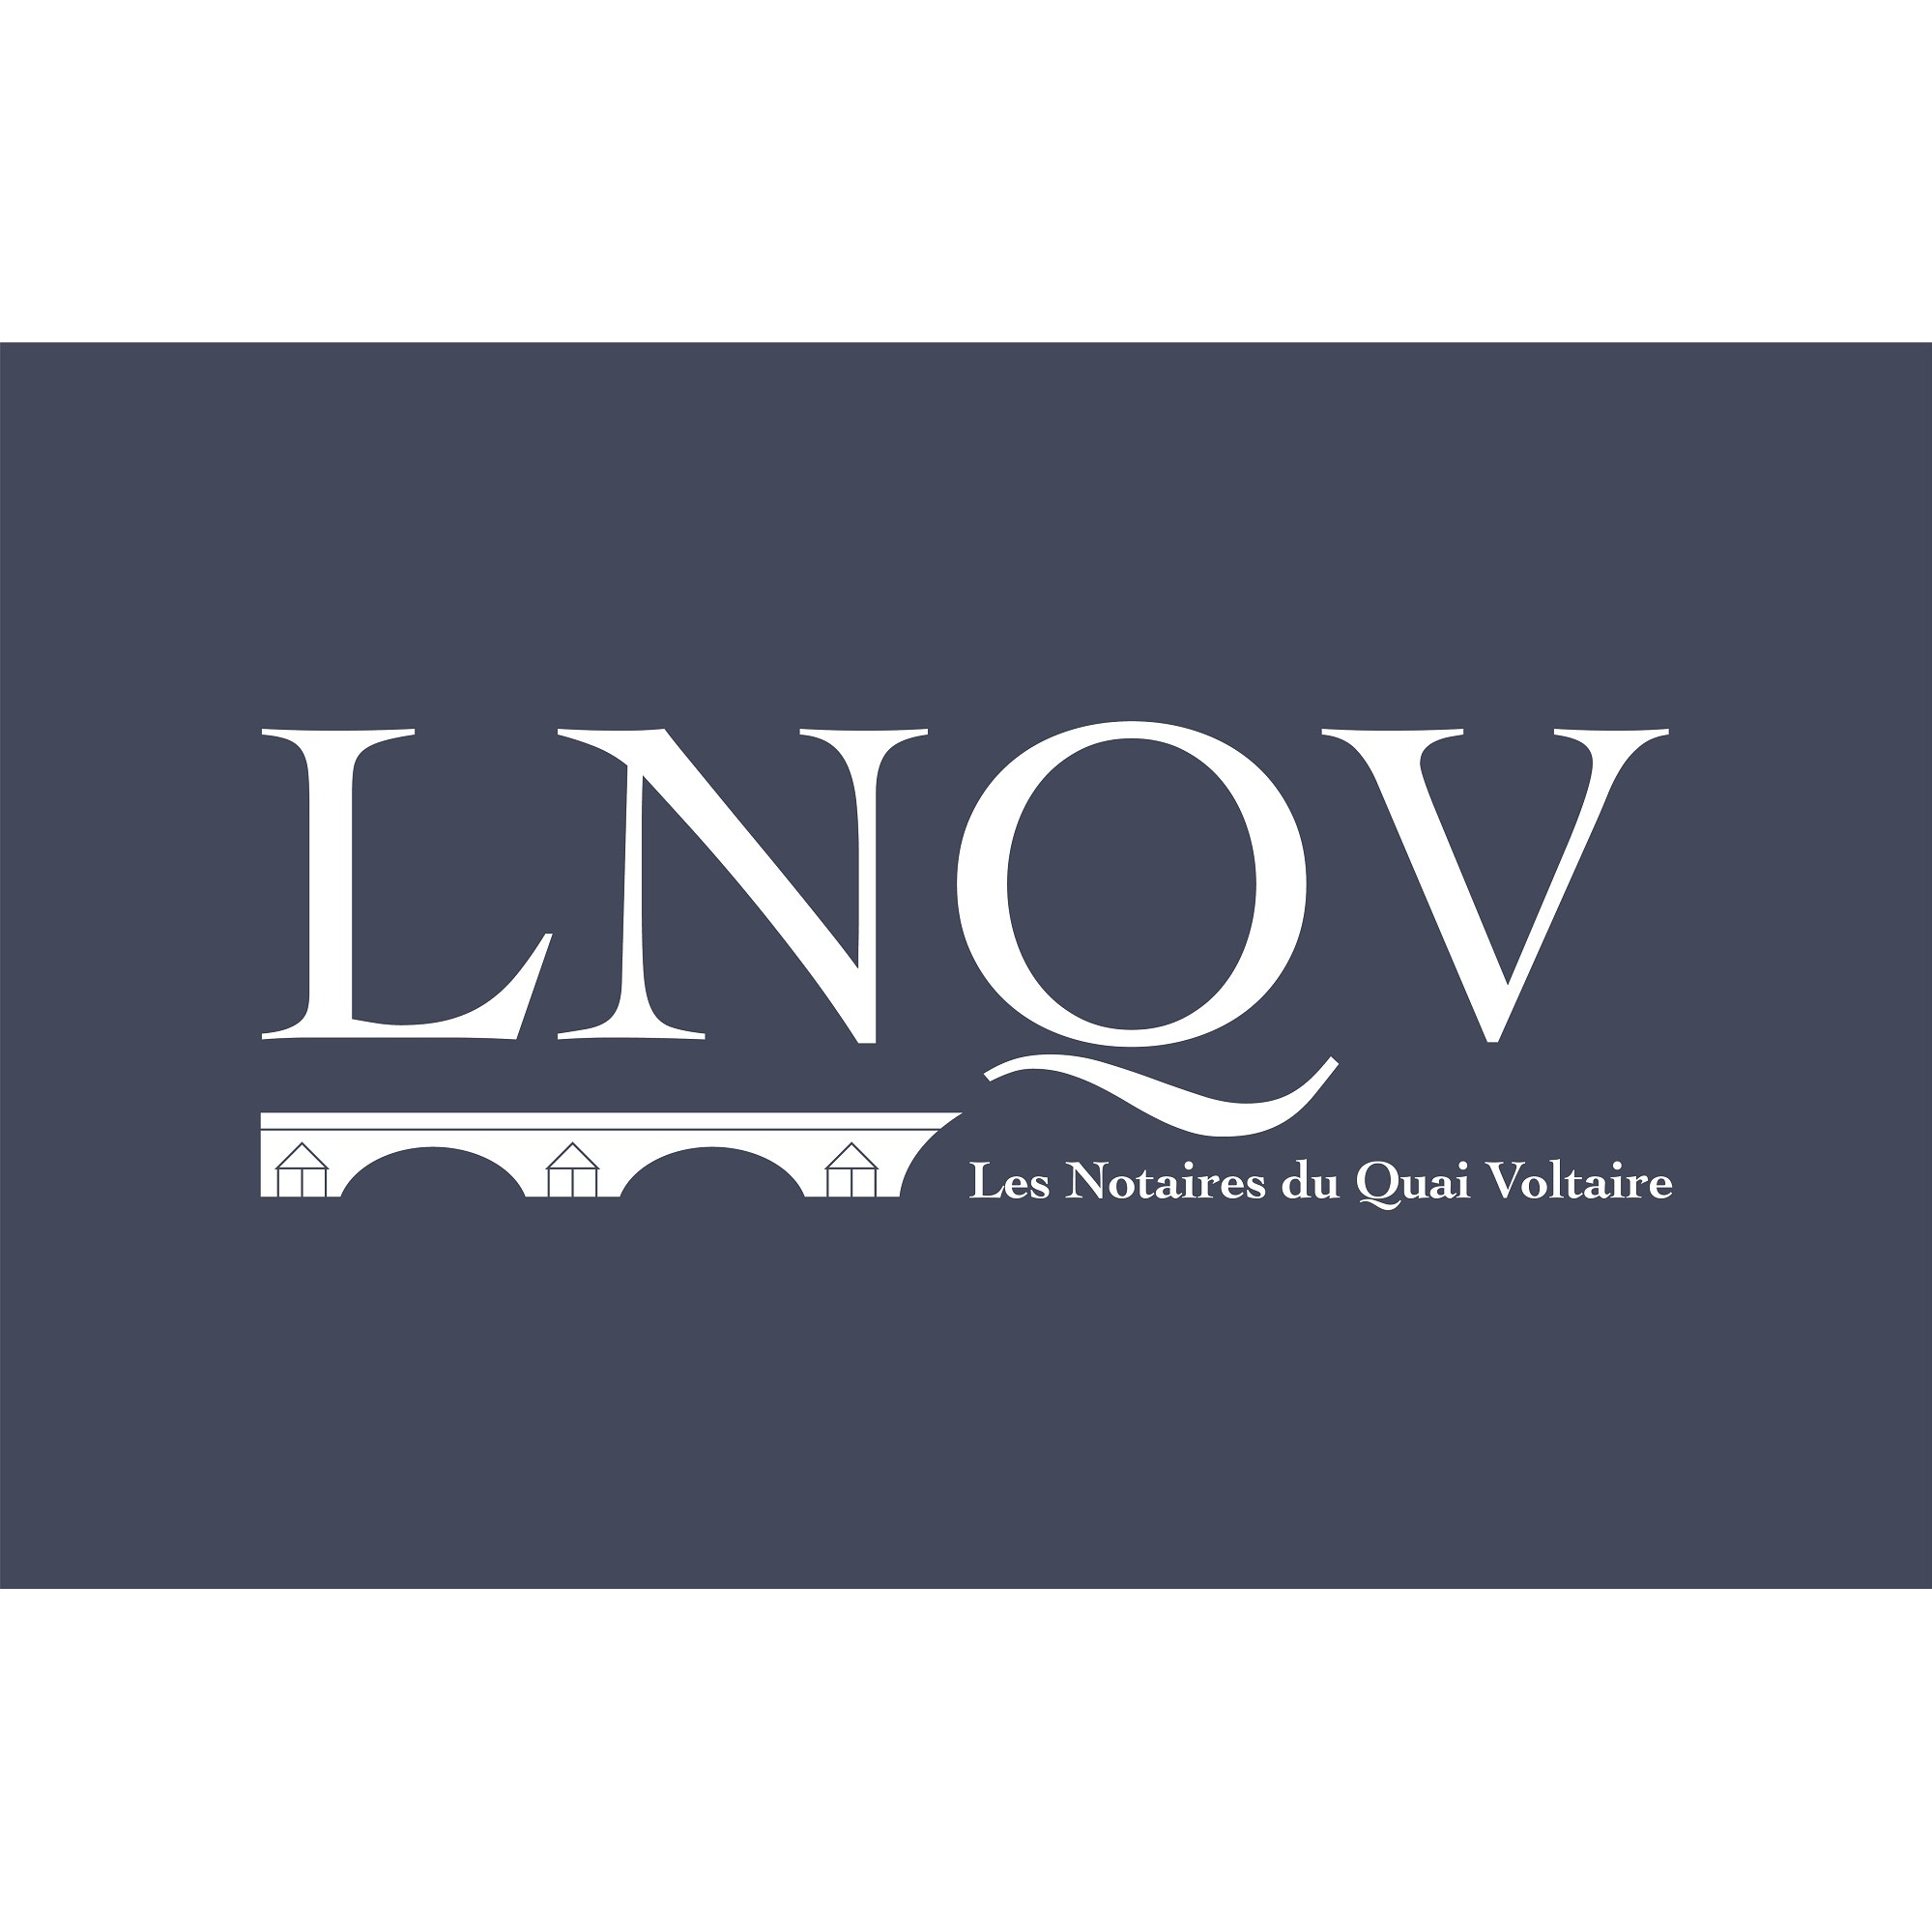 LNQV, Les Notaires du Quai Voltaire